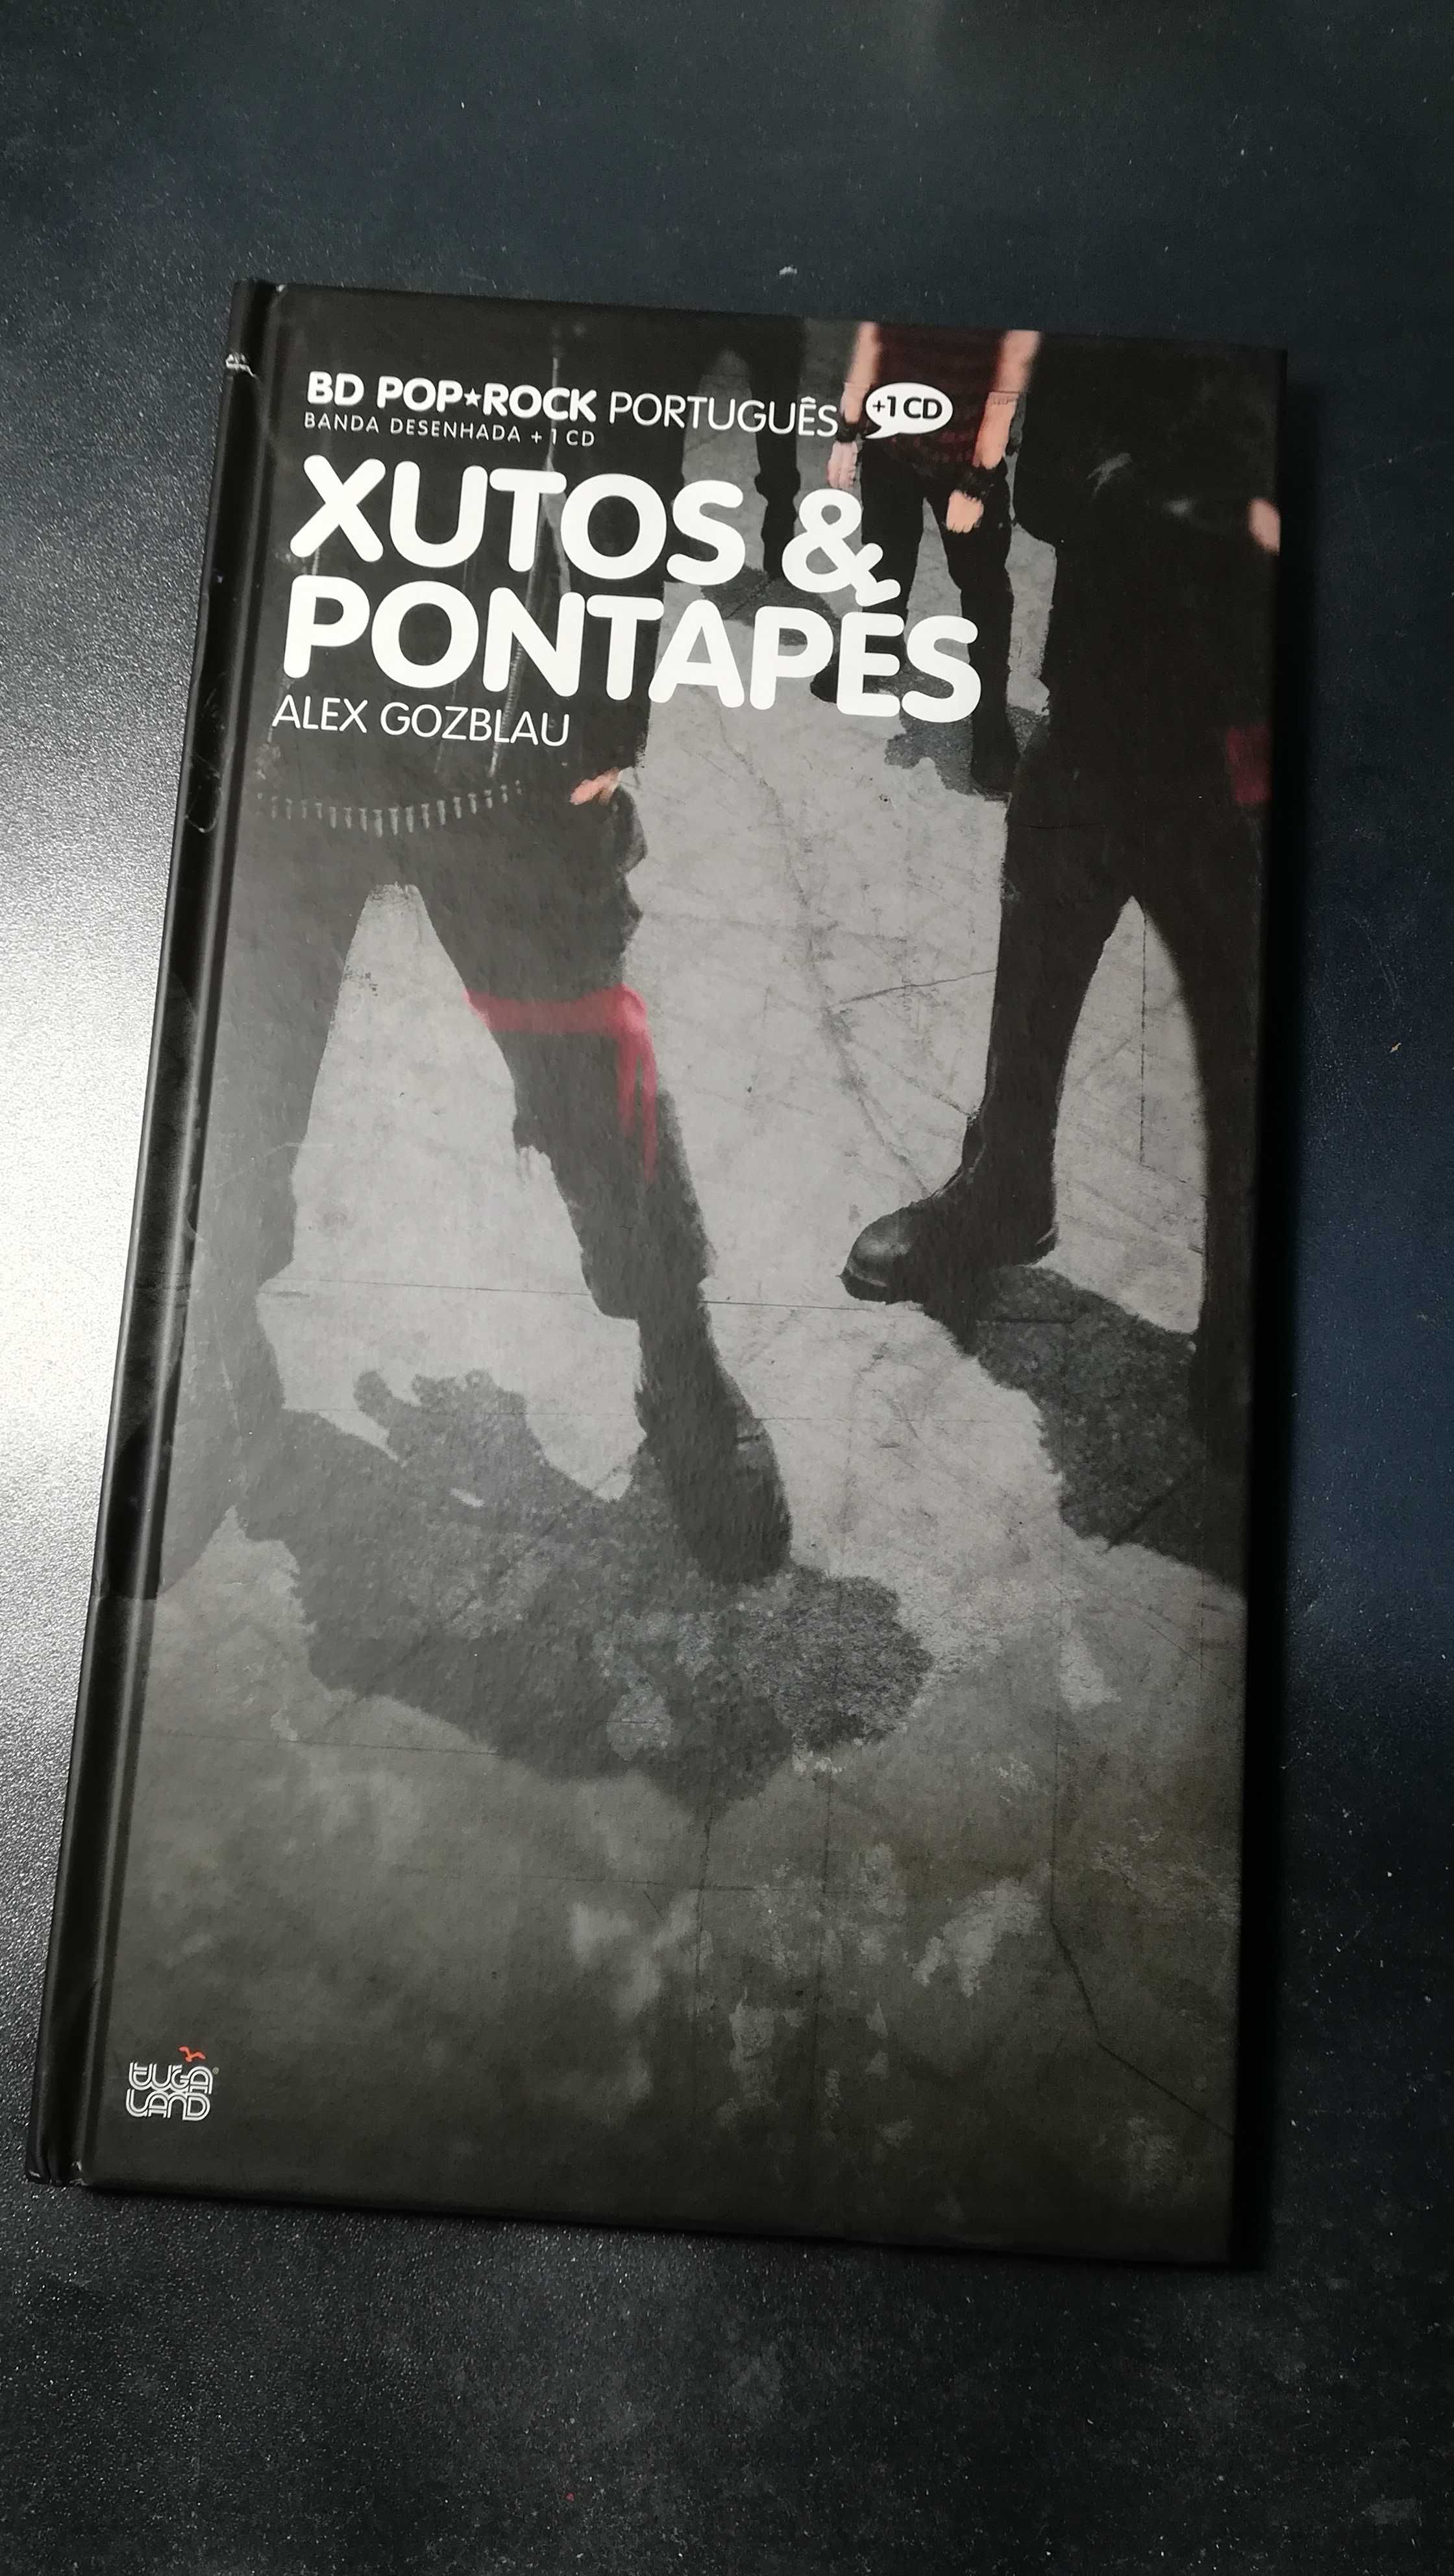 Música Portuguesa BD + CD